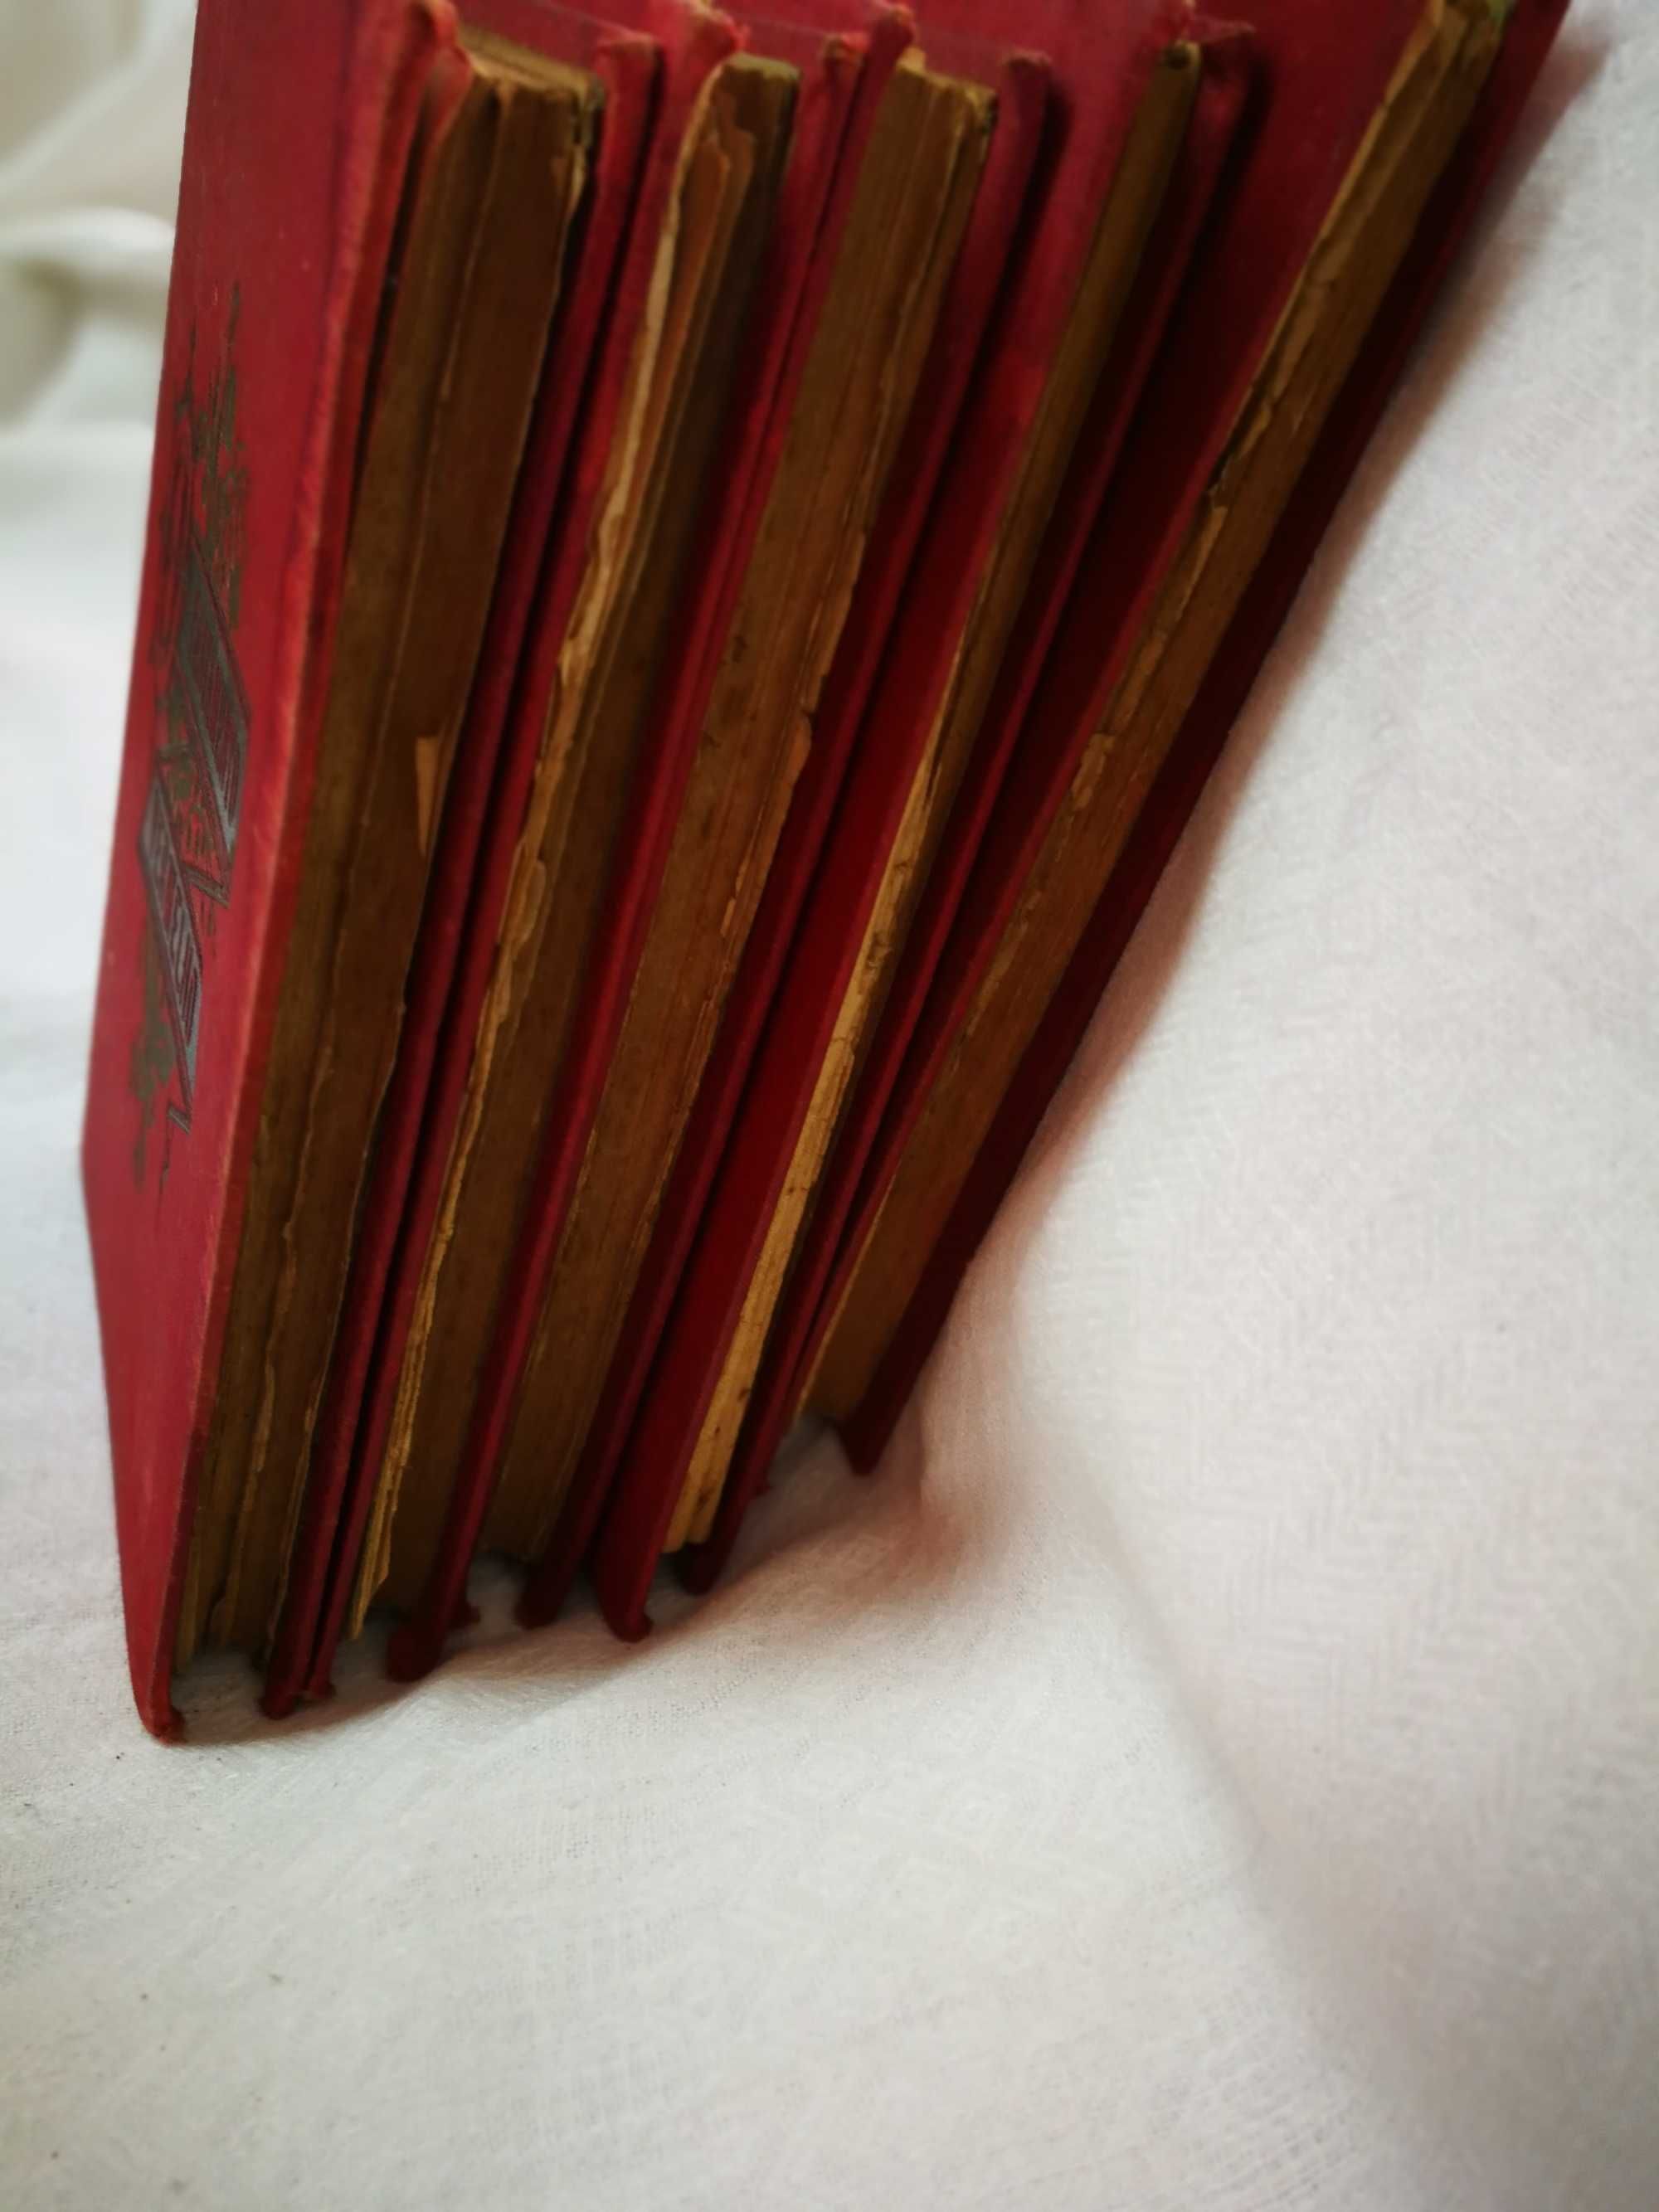 5 volumes de 1888 de o testamento vermelho de xavier de montépin